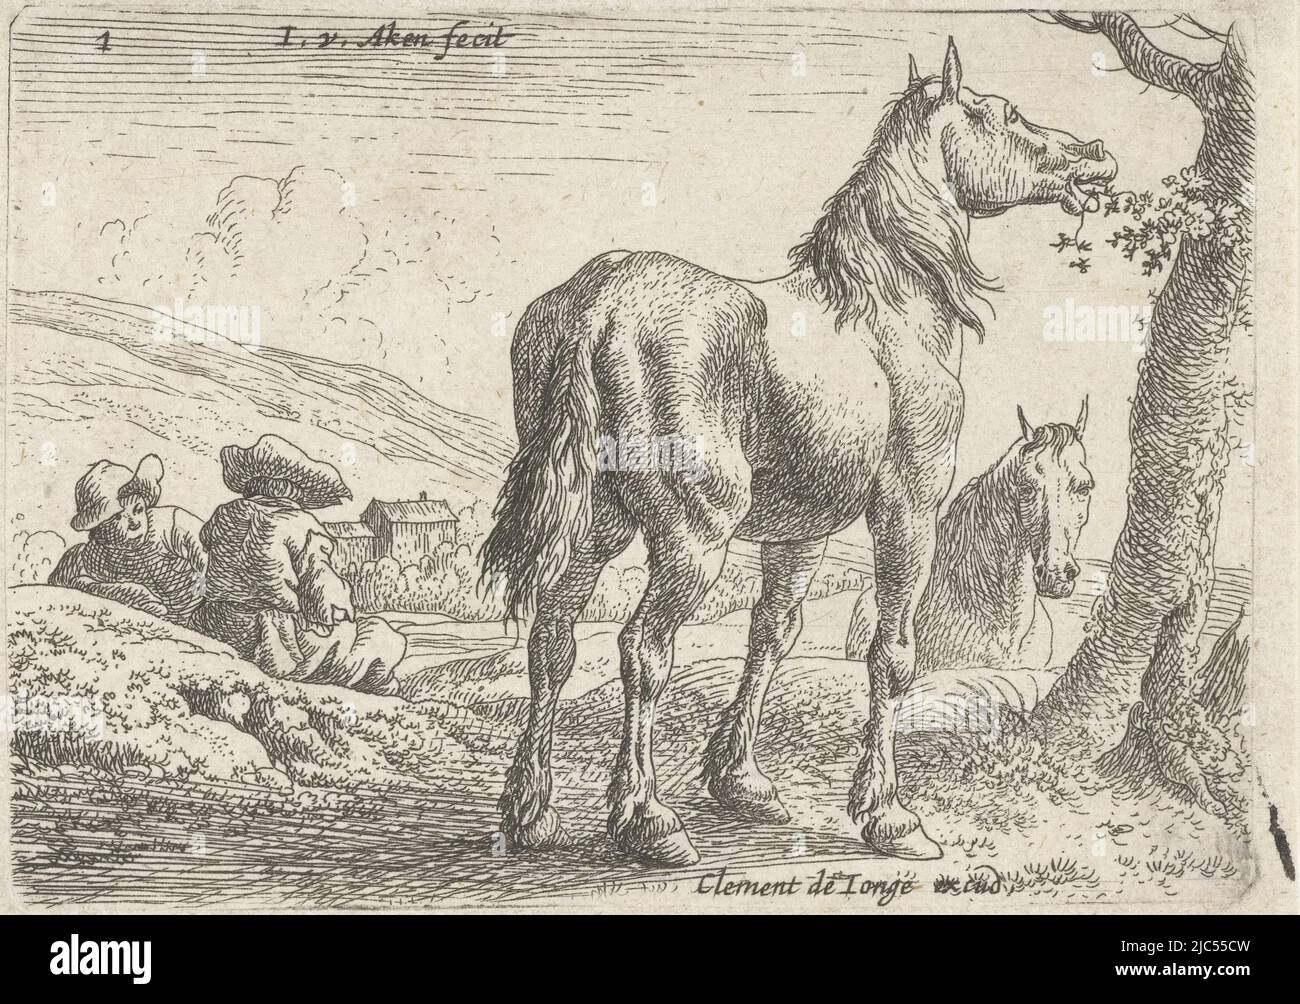 Paysage avec des chevaux mangeant des feuilles d'un arbre. À gauche, deux hommes sont assis sur le sol; derrière la droite, on peut voir la tête d'un deuxième cheval., Eating Horse Landscapes avec des chevaux (titre de la série), imprimeur: Jan van Aken, (mentionné sur l'objet), éditeur: Clément de Jonghe, (mentionné sur l'objet), Amsterdam, 1624 - 1661 et/ou 1640 - 1670, papier, gravure, h 71 mm × l 98 mm Banque D'Images